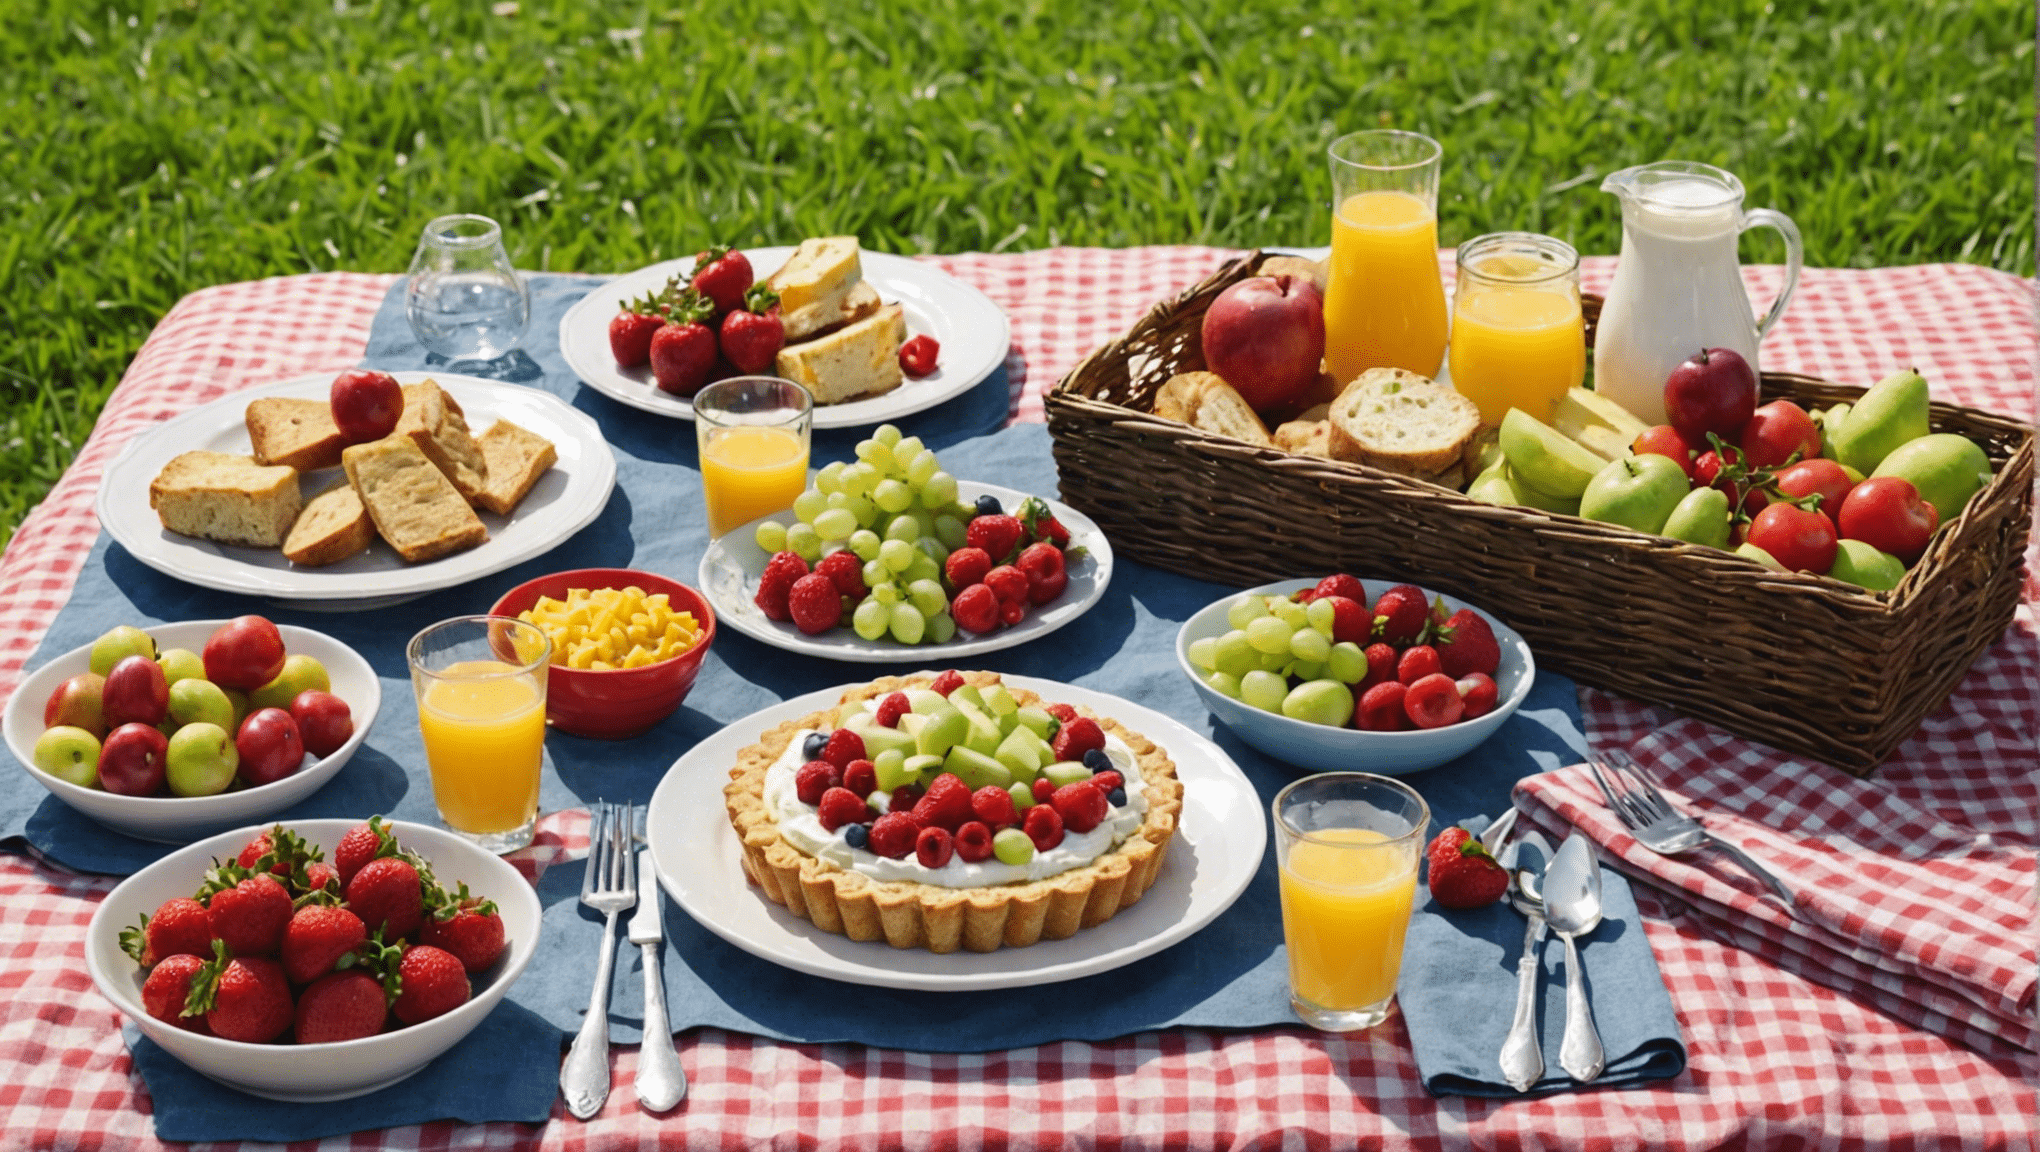 descubre nuestros consejos y recetas para preparar un picnic perfecto y hacer de tu salida al aire libre un éxito.